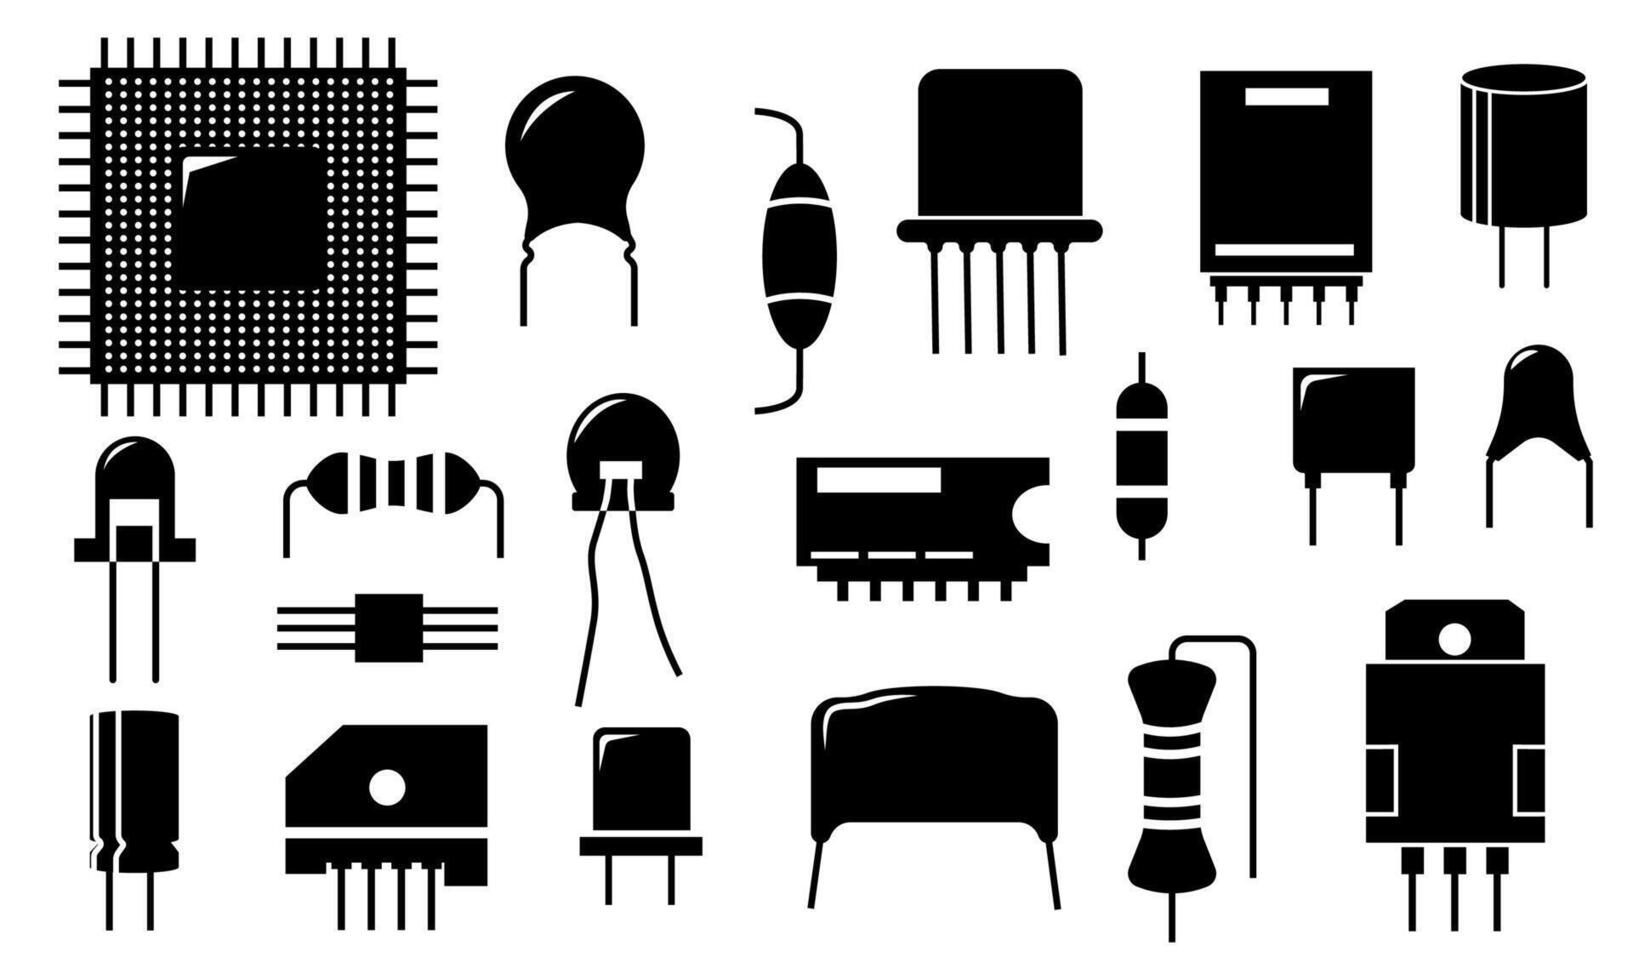 zwart elektronisch bestanddeel pictogrammen. elektrisch stroomkring geleider en halfgeleider onderdelen, diode transistor weerstand condensator elementen. vector reeks